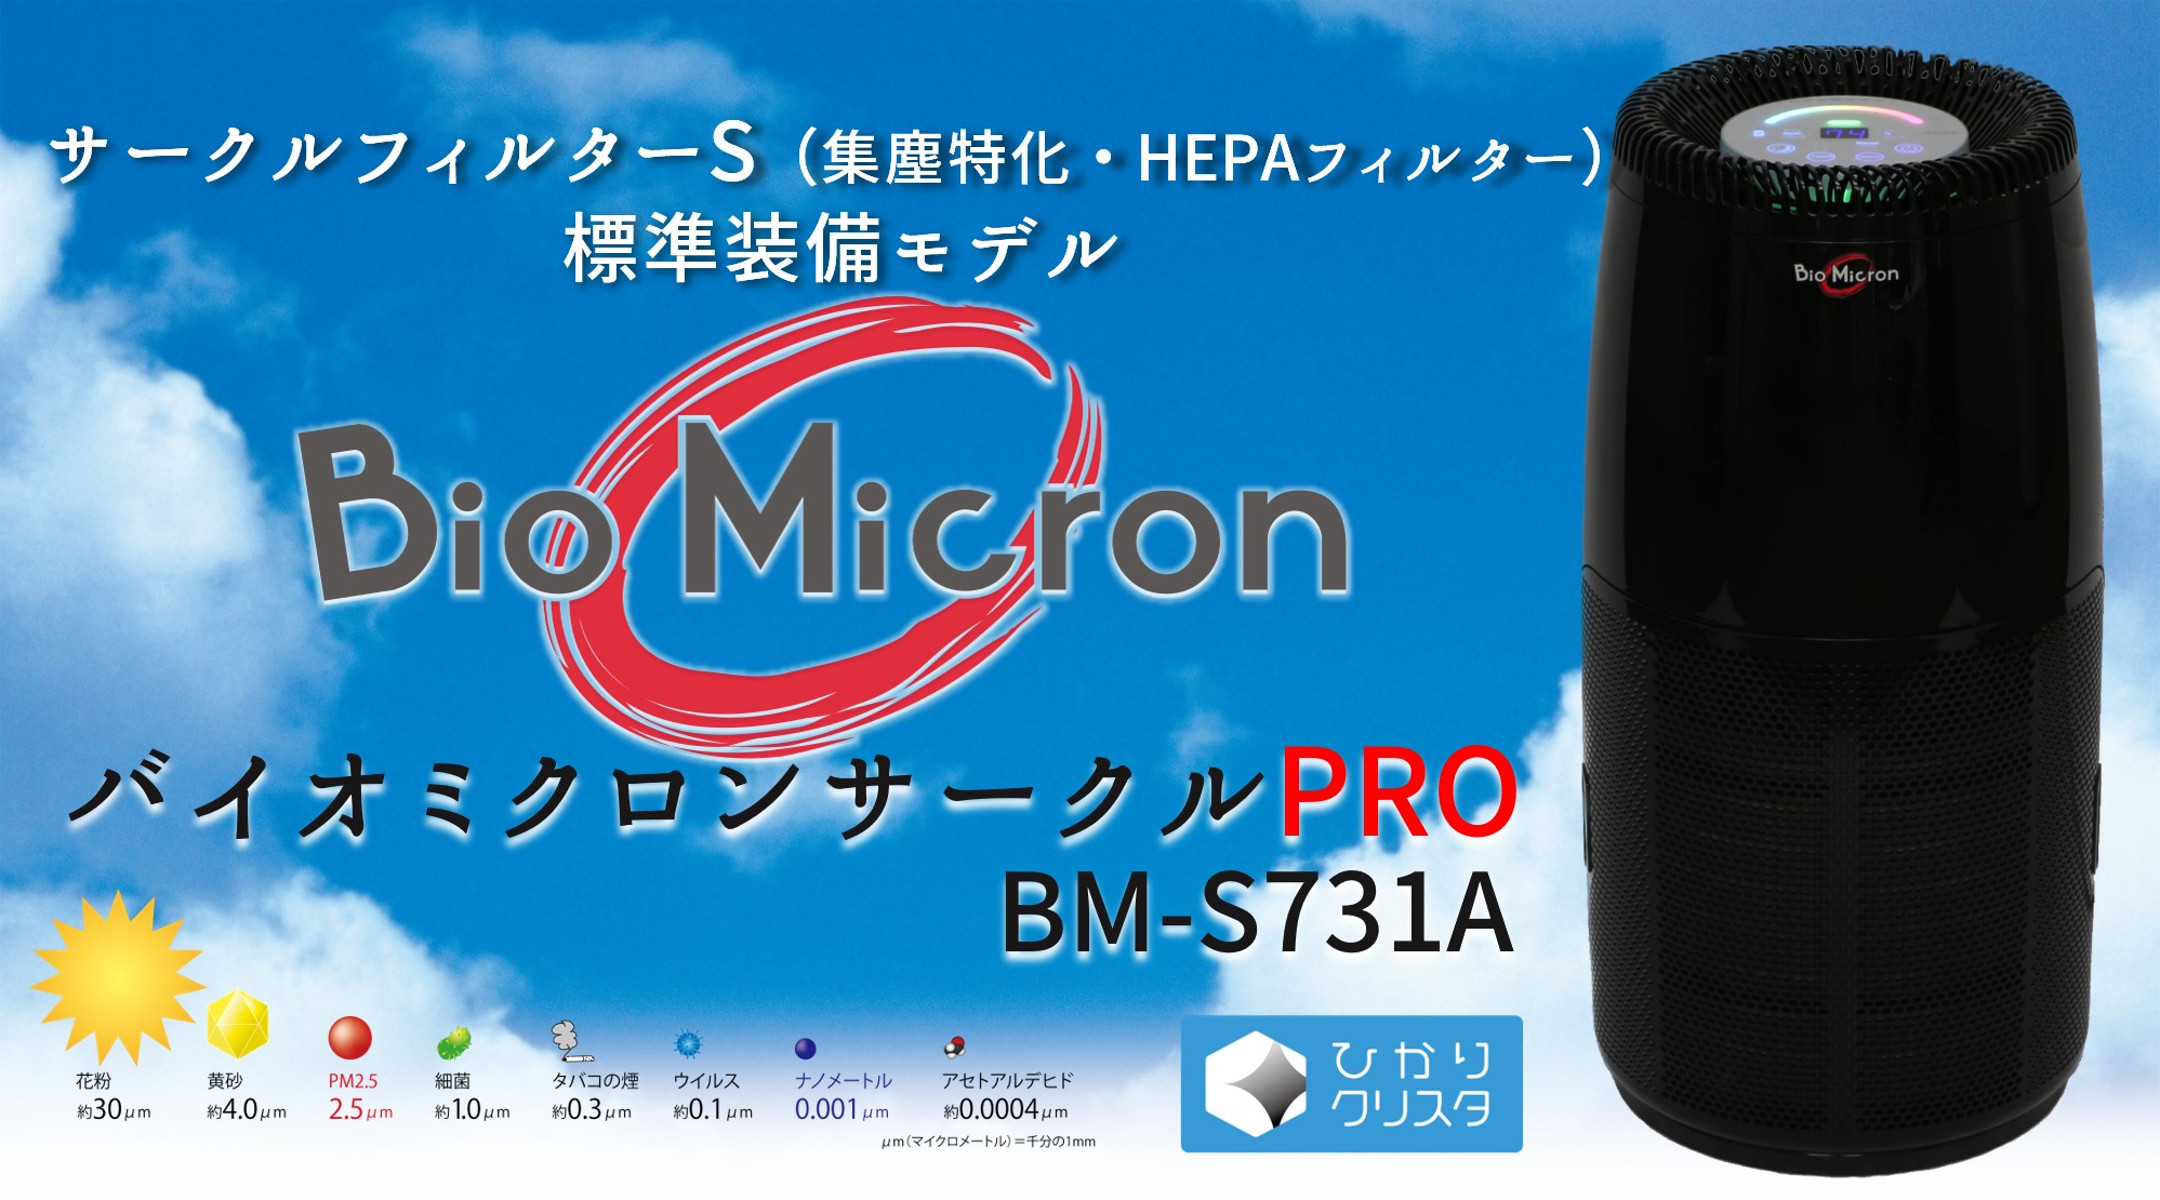 バイオミクロンサークルPRO BM-S731A – アンデス電気株式会社 製品情報 